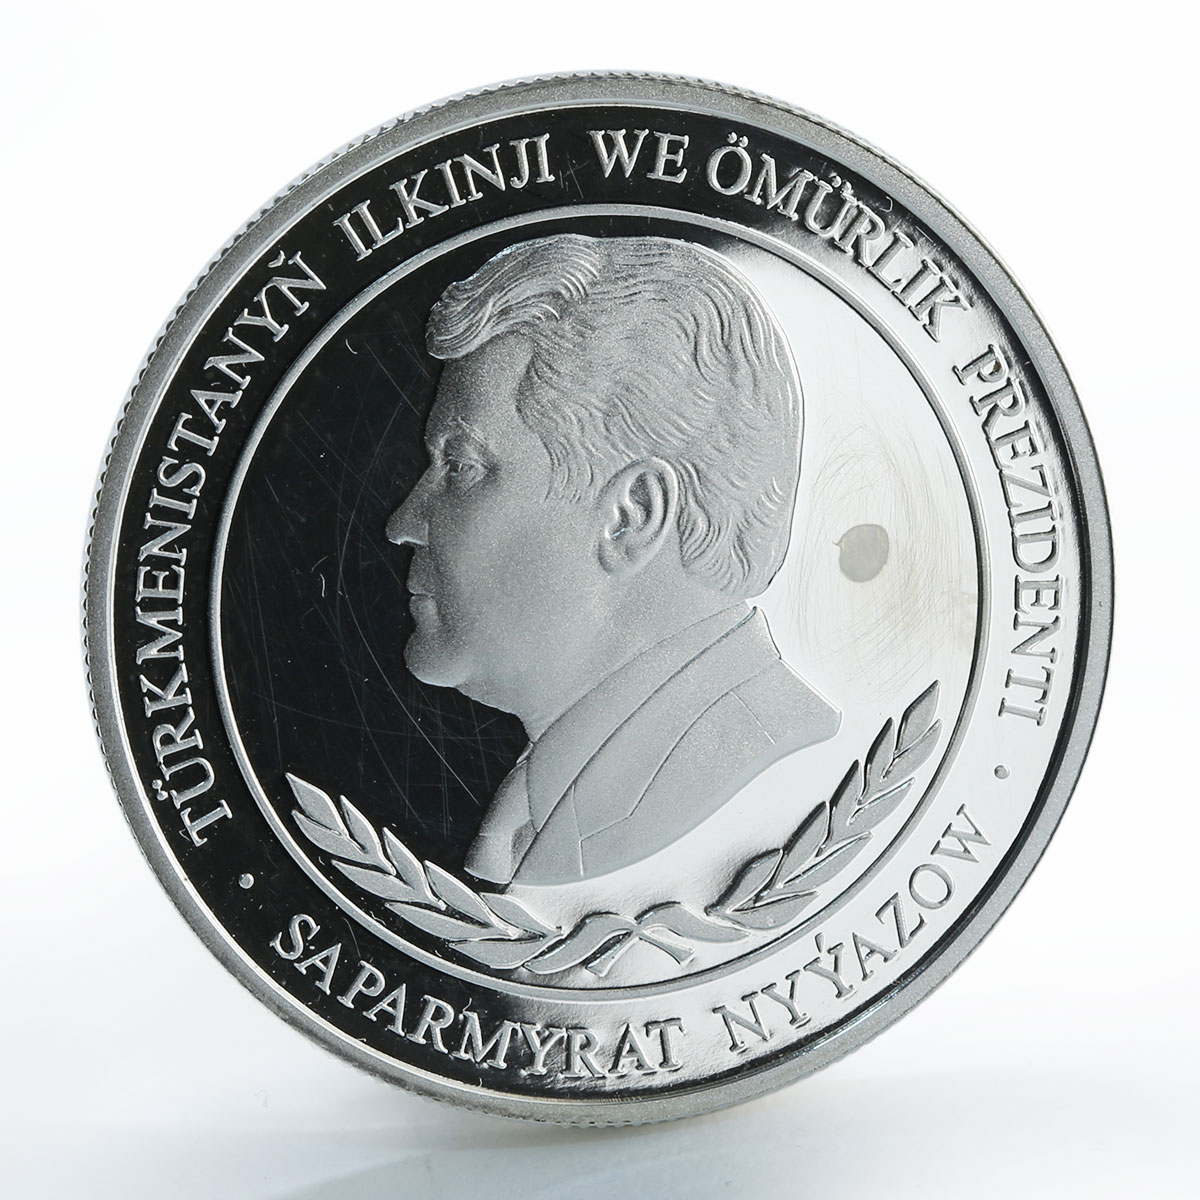 Turkmenistan 500 manat Mohammad Bairam Khan Turkmen silver coin 2001